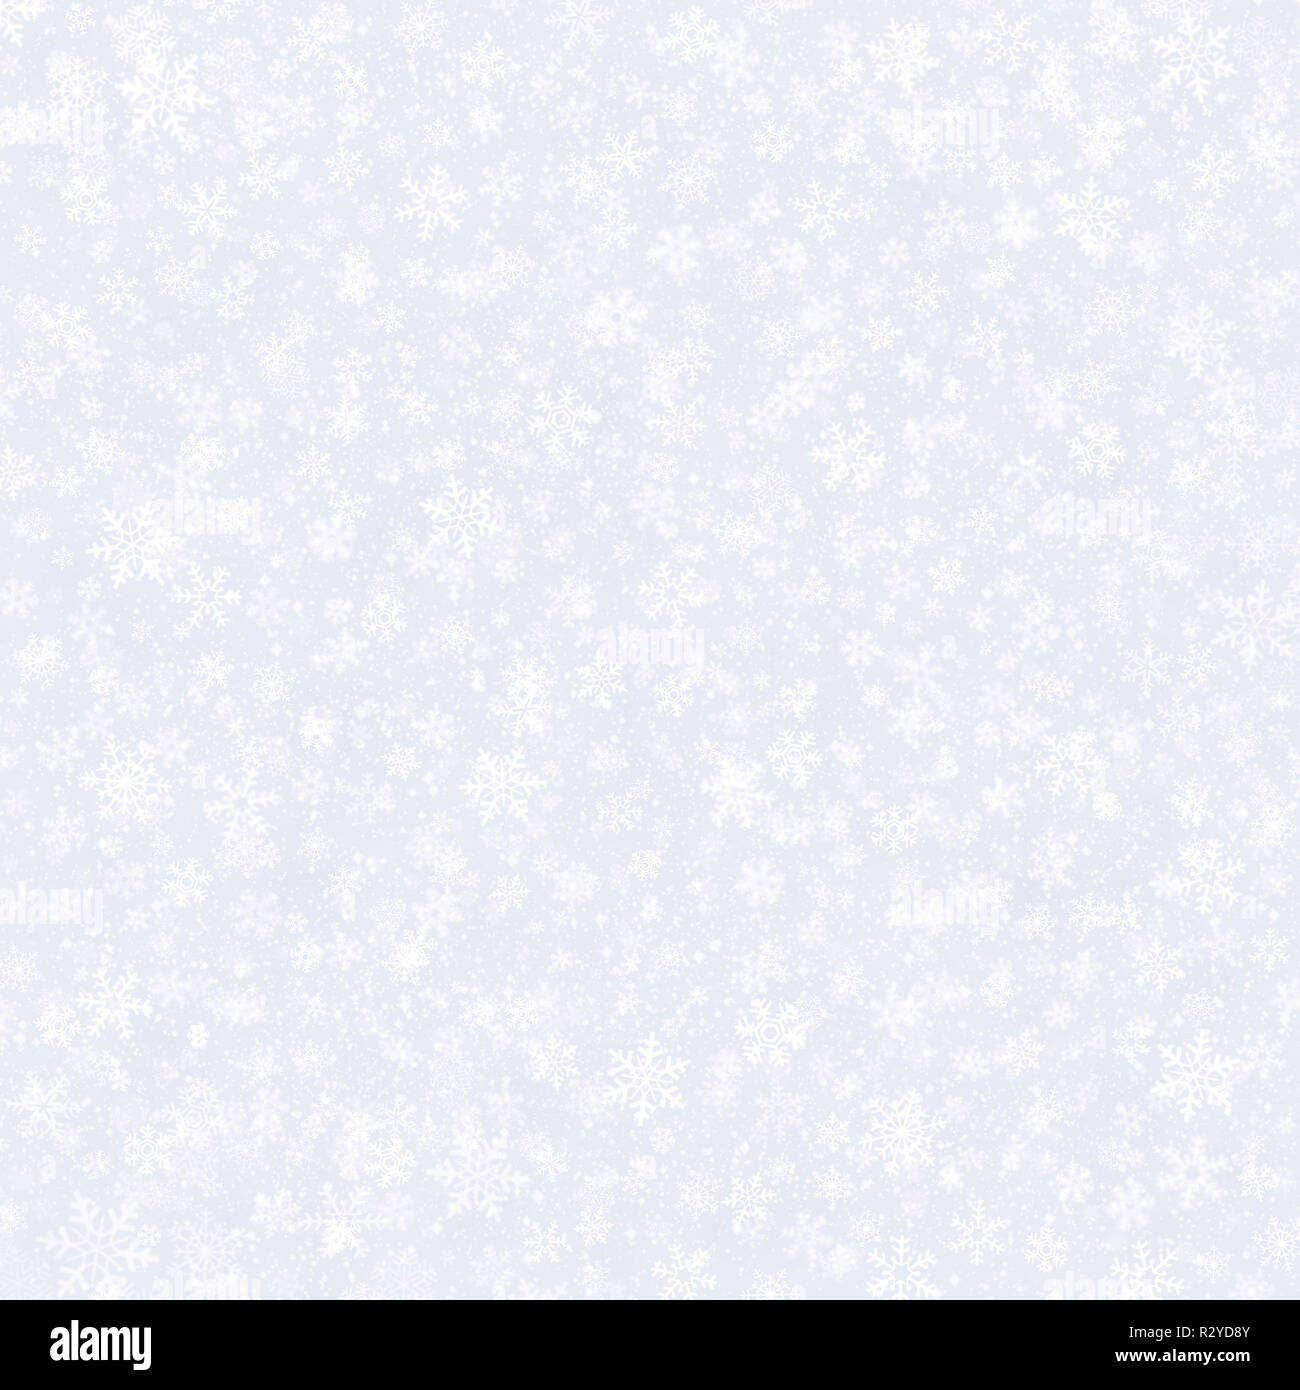 Weiße Schneeflocken Formen und fallenden Schnee auf einem silbernen grauen Hintergrund. Winter saison Material. Stockfoto